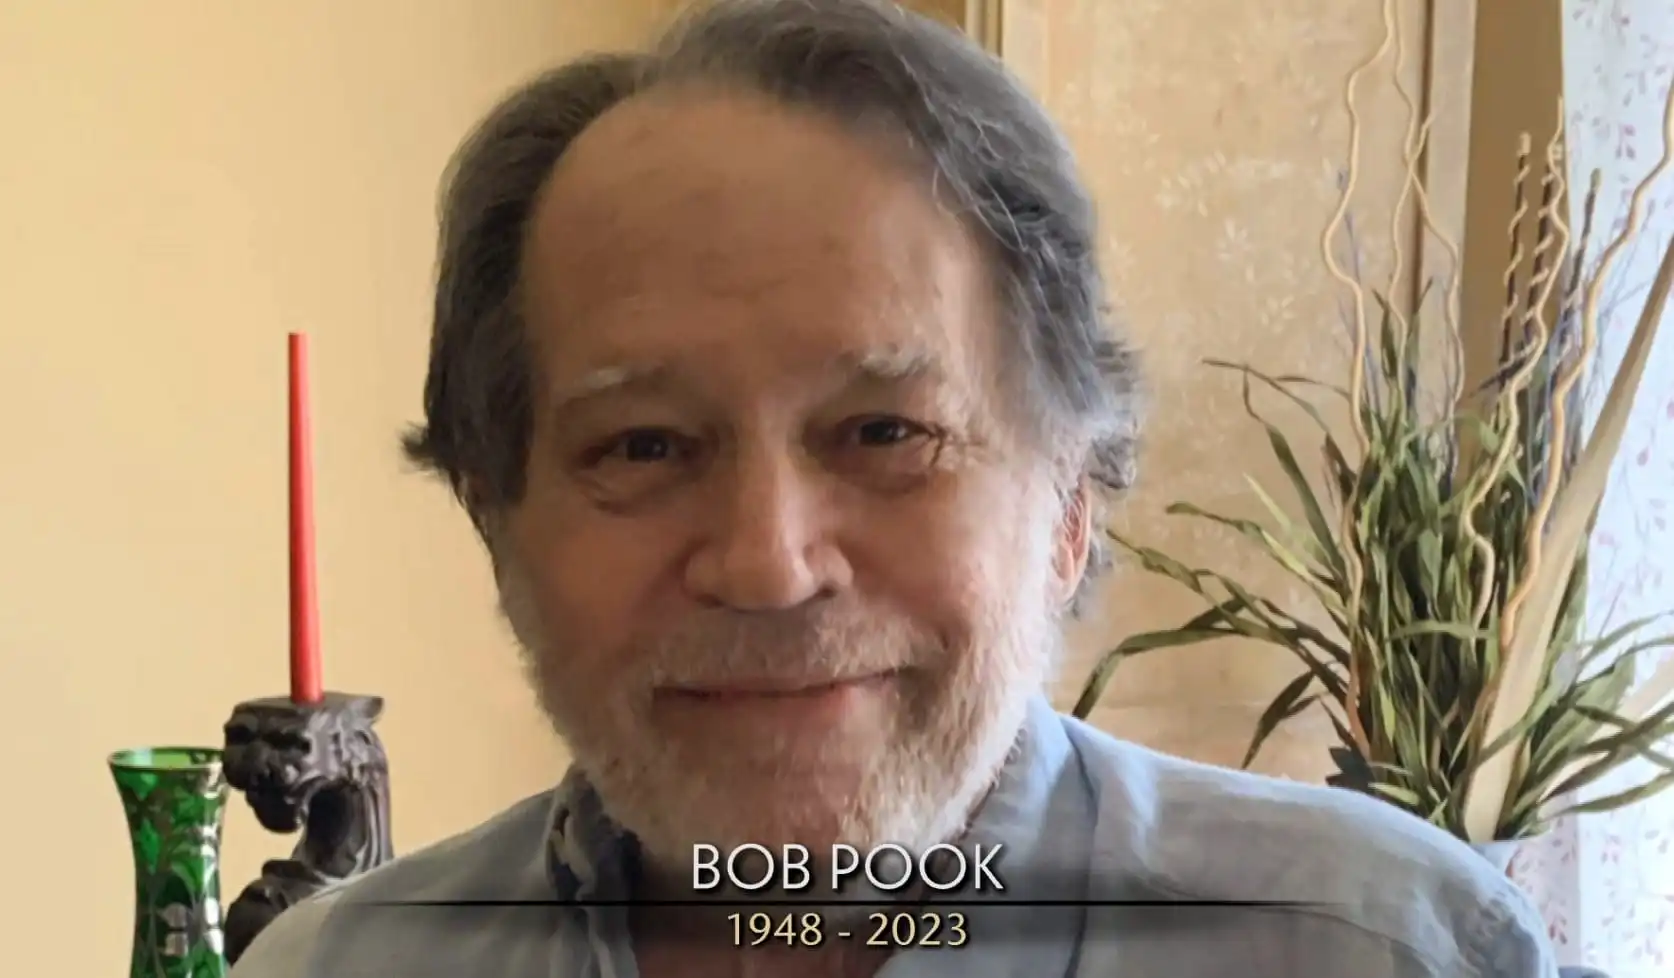 Bob Pook died